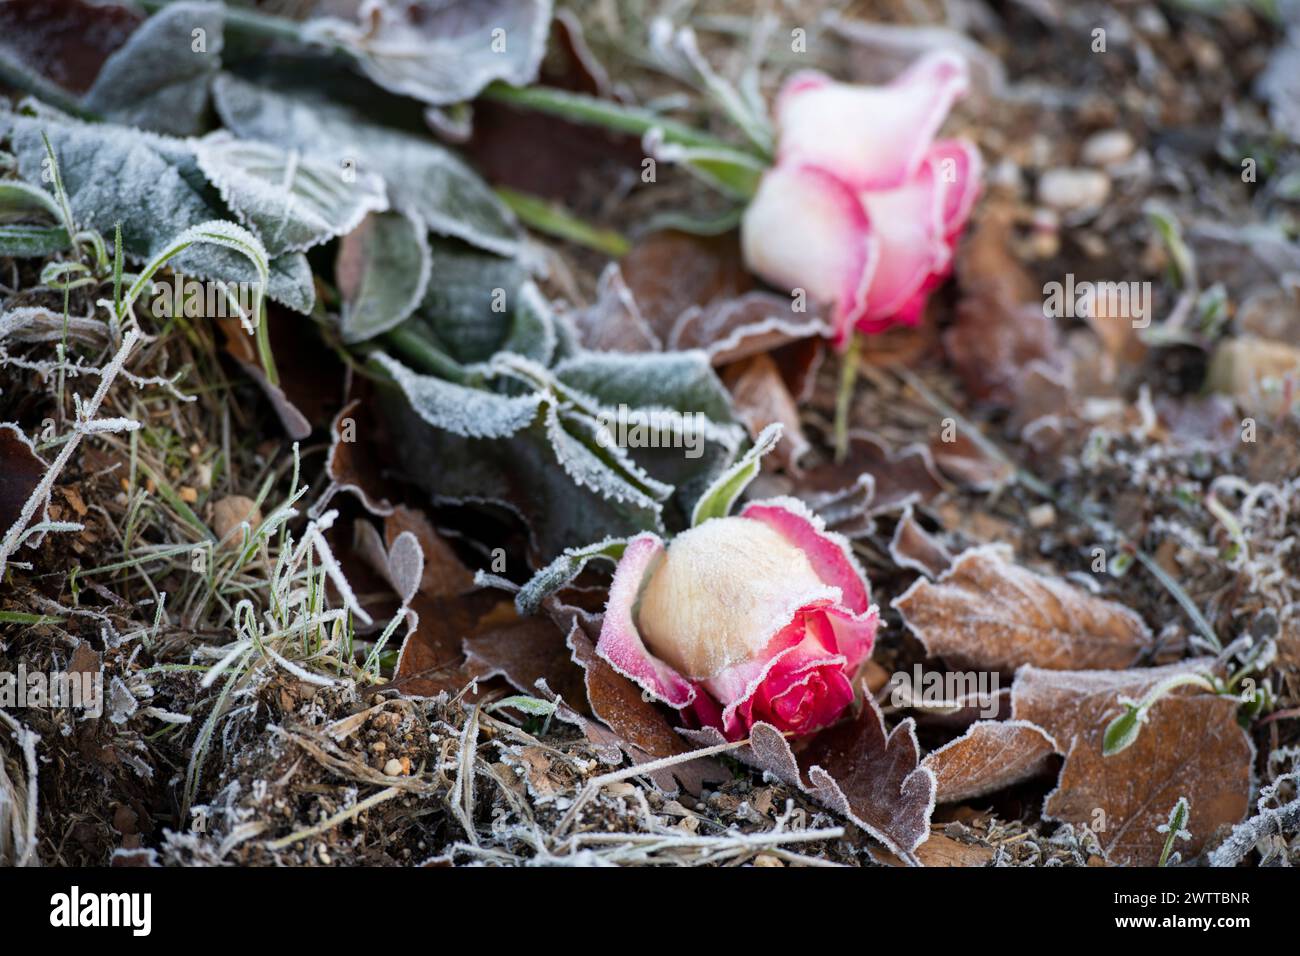 Una mattina ghiacciata porta una delicata bellezza a queste rose, toccate dal freddo dell'alba presto. Foto Stock